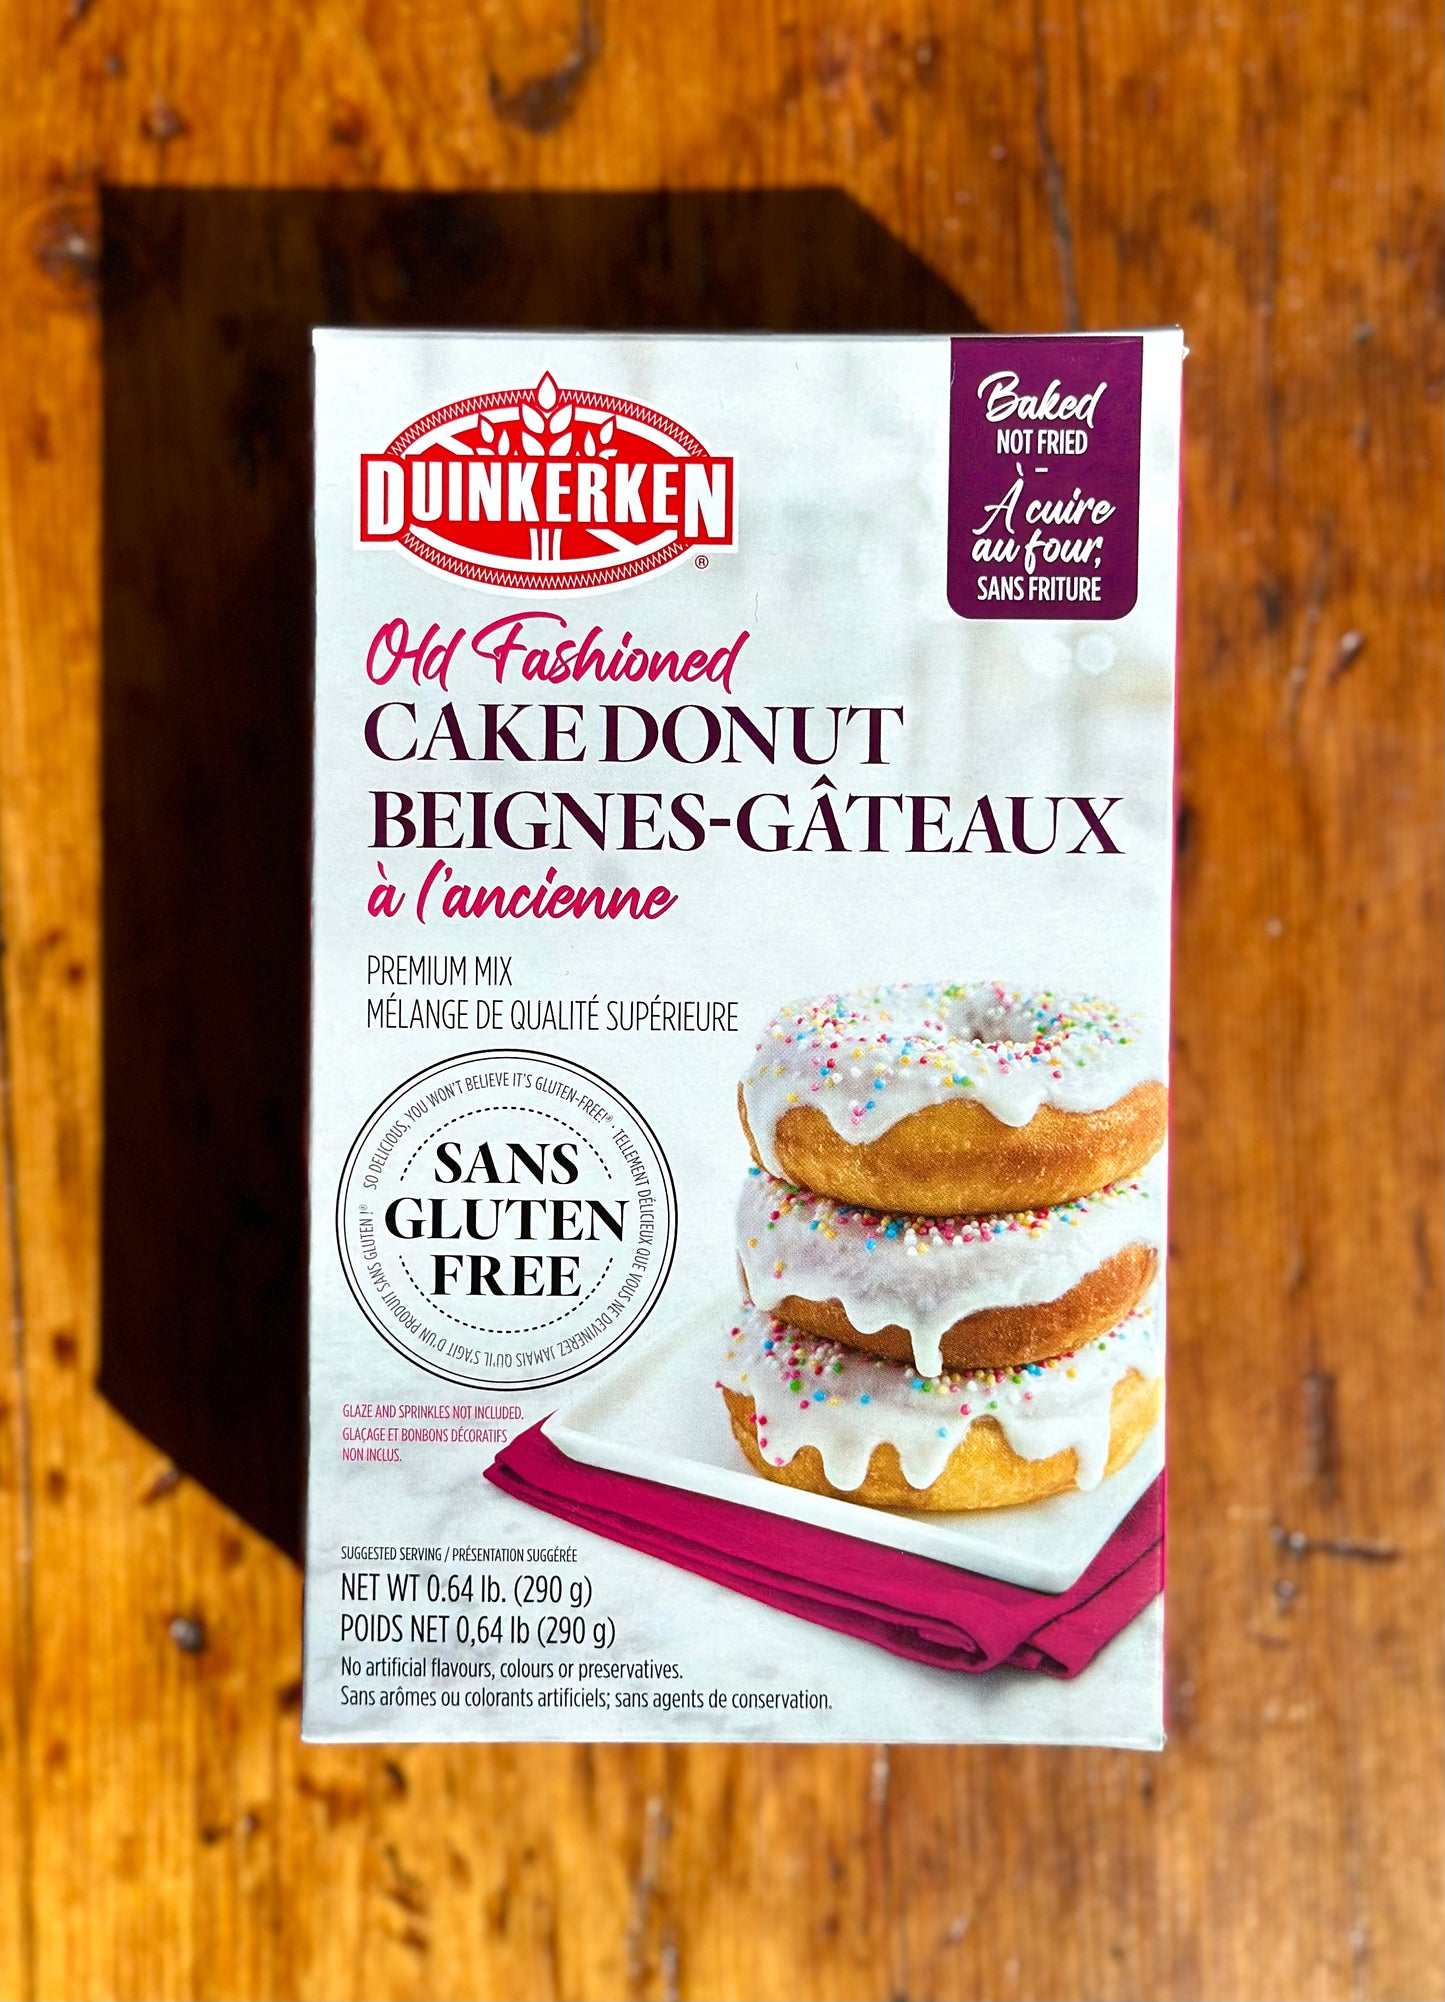 Cake Donut Mix By Duinkerken